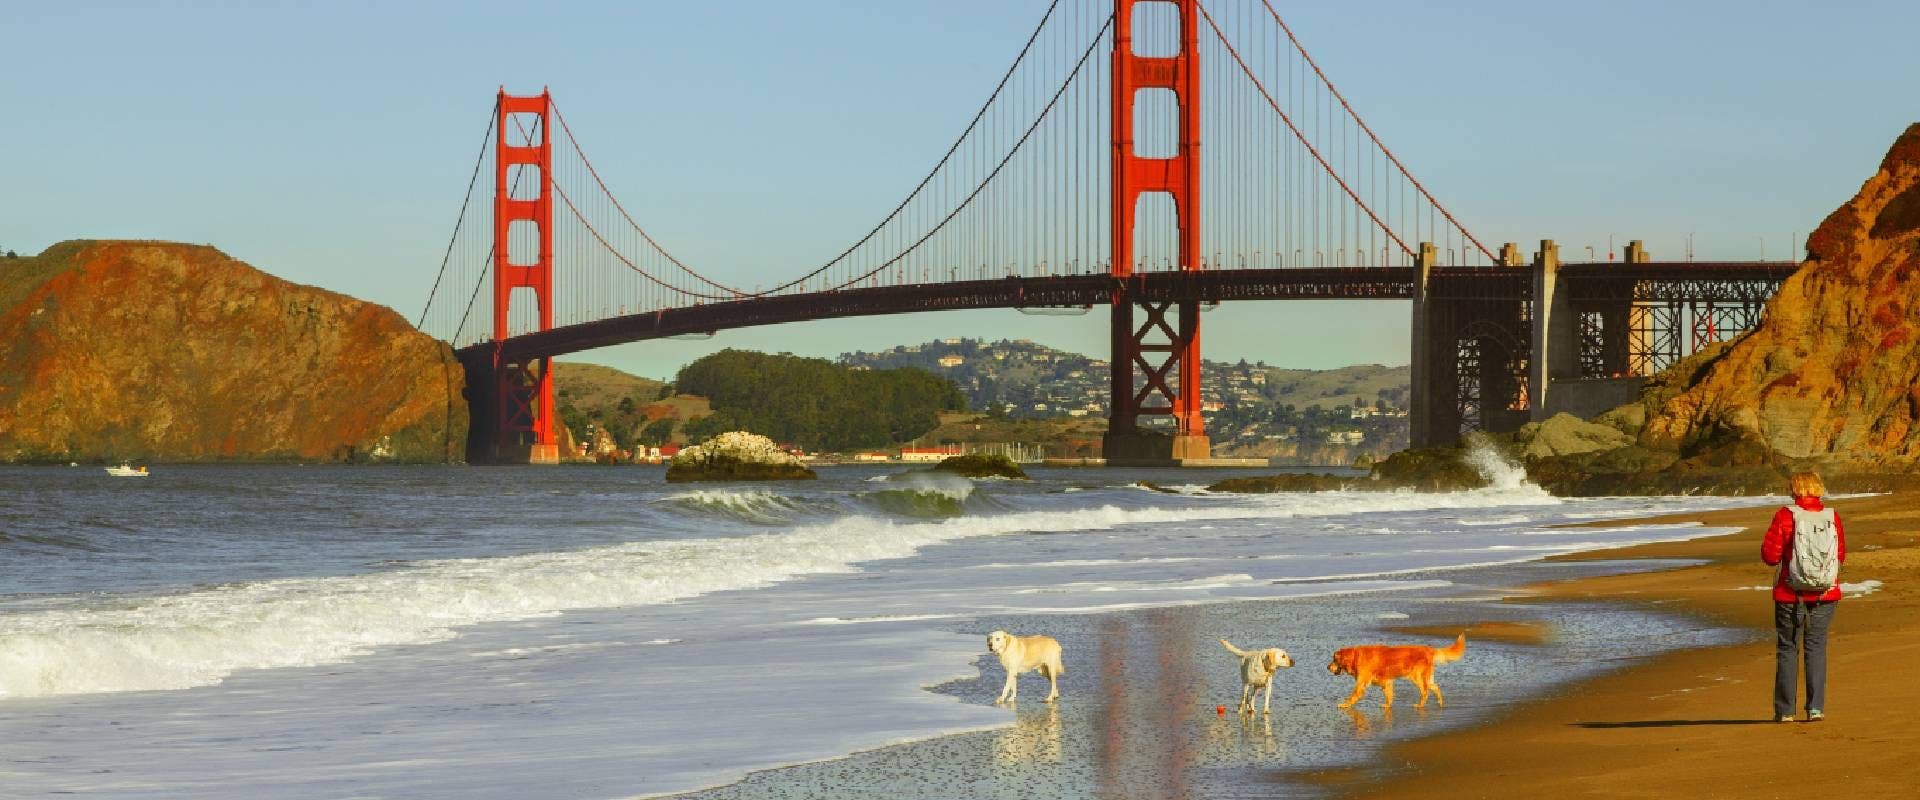 Baker Beach - Golden Gate Bridge, California